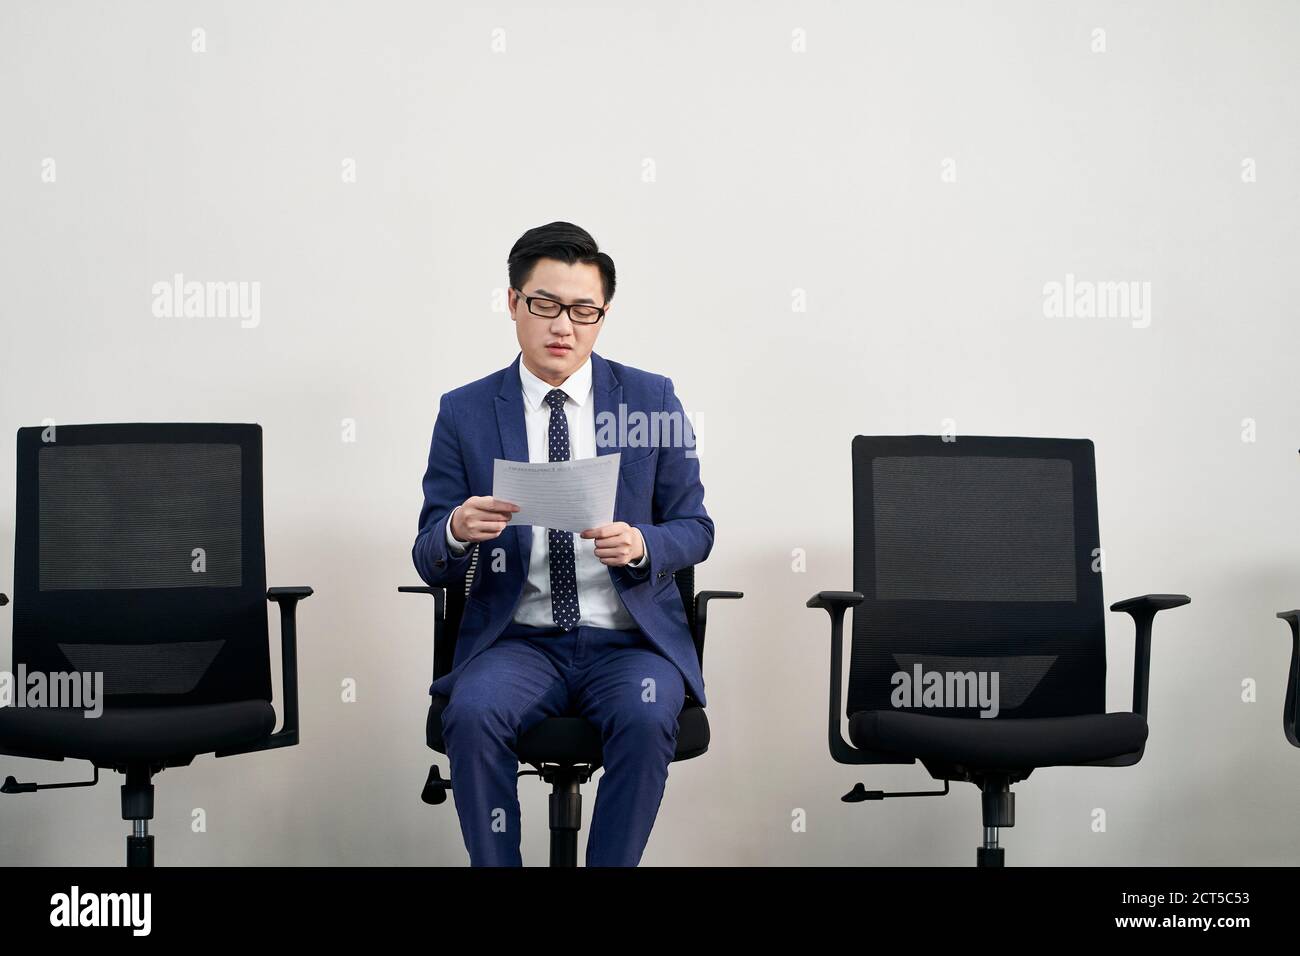 jeune asiatique homme candidat à l'emploi se préparant à l'entrevue tout en attendant dans la file d'attente Banque D'Images